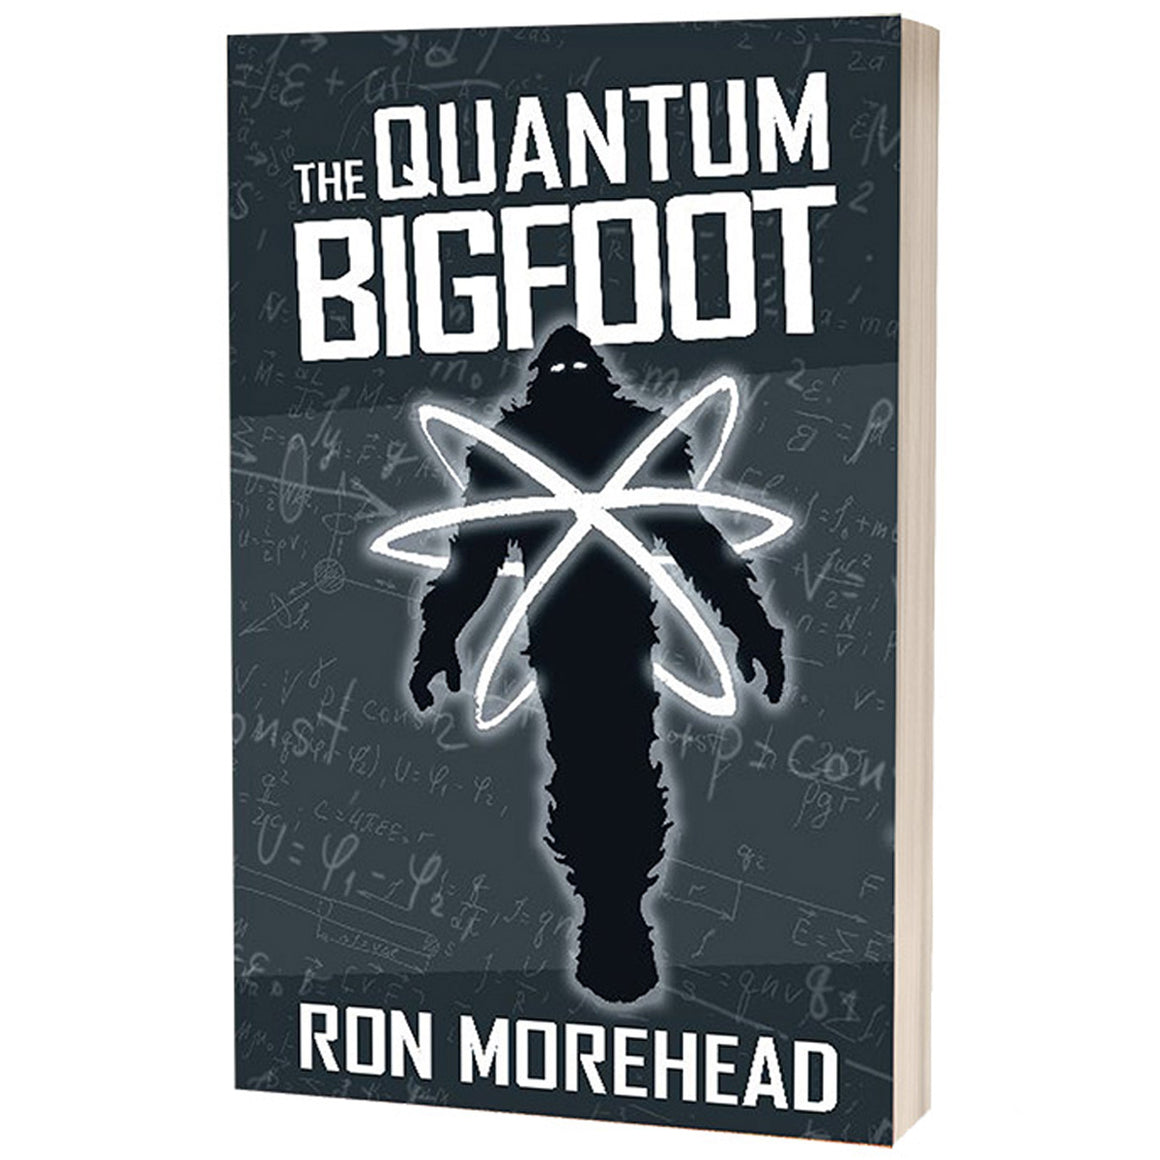 The Quantum Bigfoot